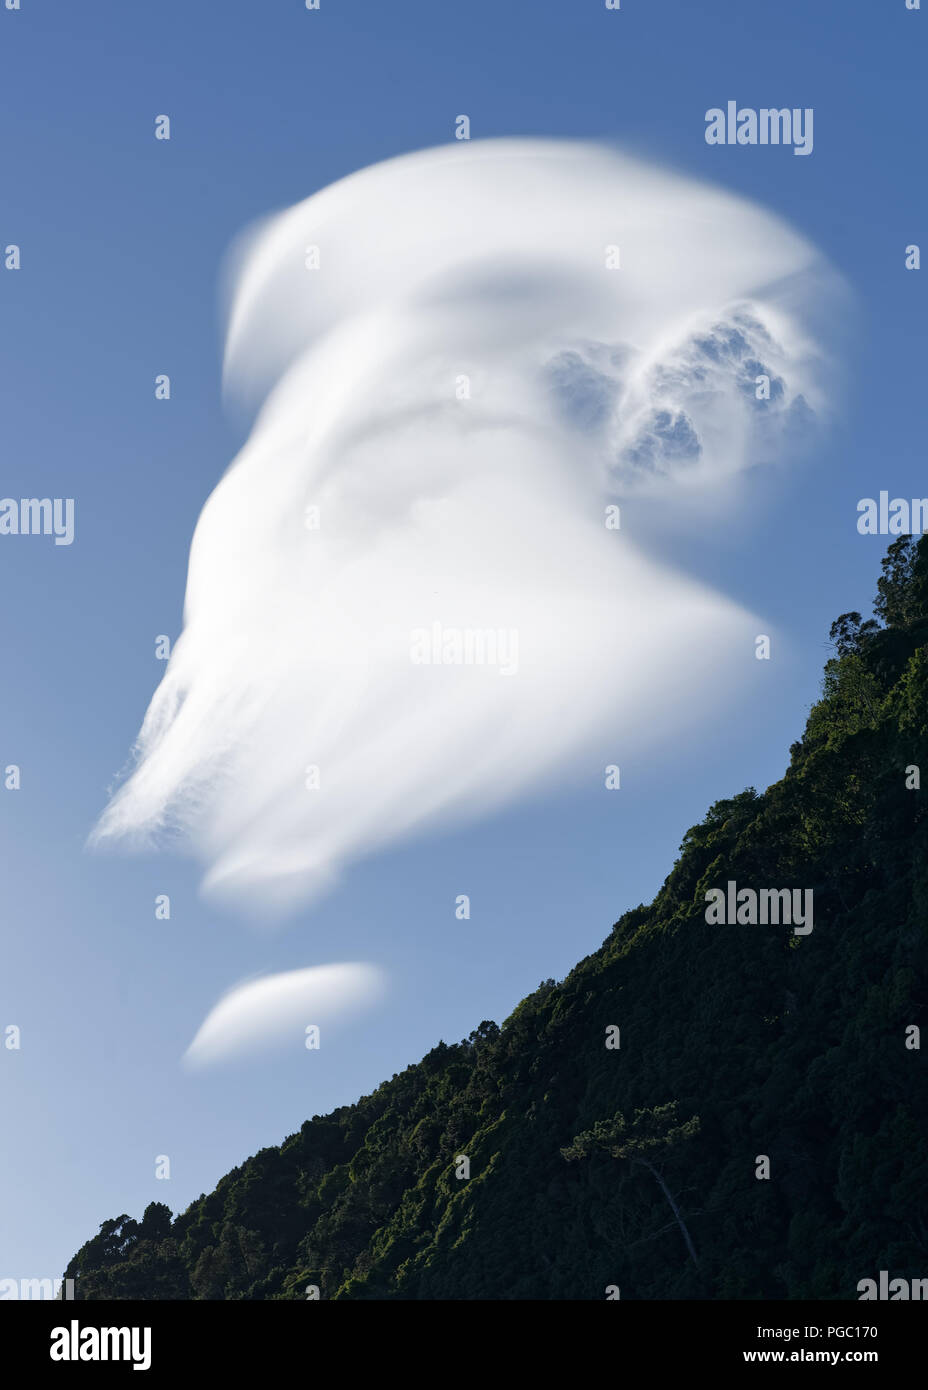 En face d'un mur raide, un nuage formes avec une forme spéciale qui rappelle un fantôme - Emplacement : Açores, l'île de Sao Jorge Banque D'Images